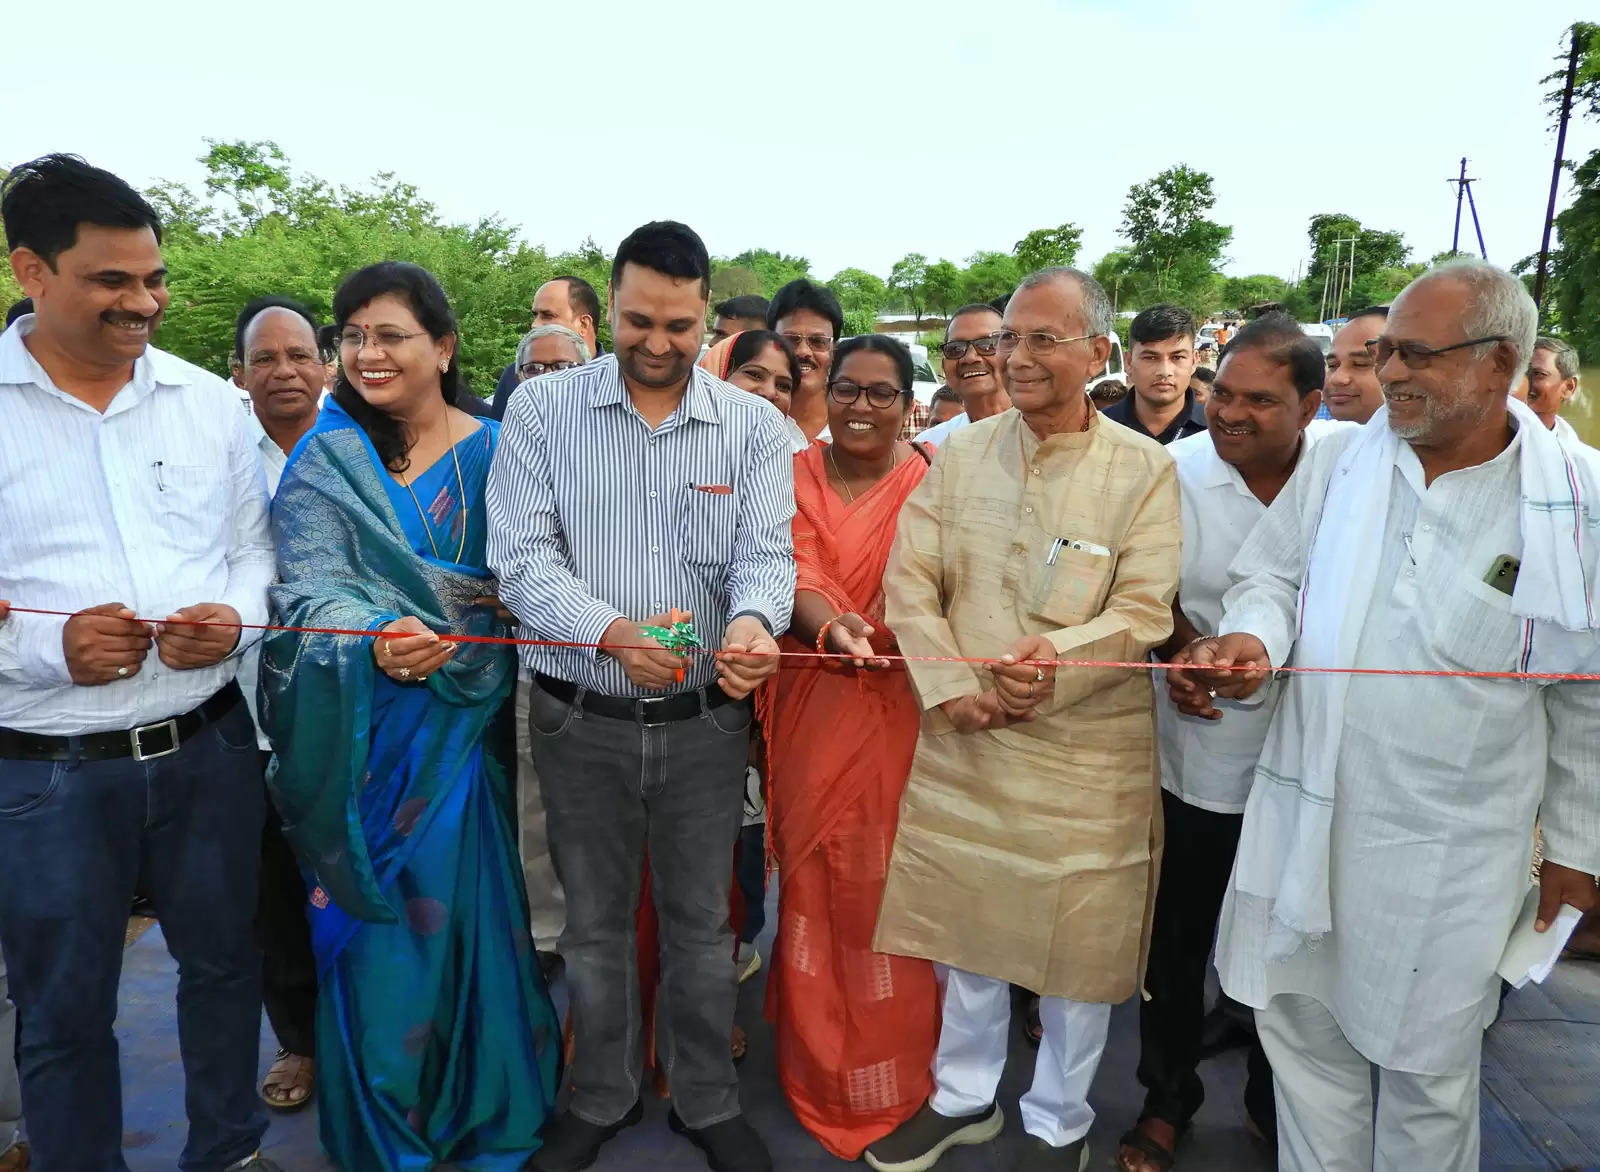 प्रदेश के लोक निर्माण मंत्री साहू और प्रभारी मंत्री पटेल ने नवीन शासकीय महाविद्यालय का किया शुभारंभ